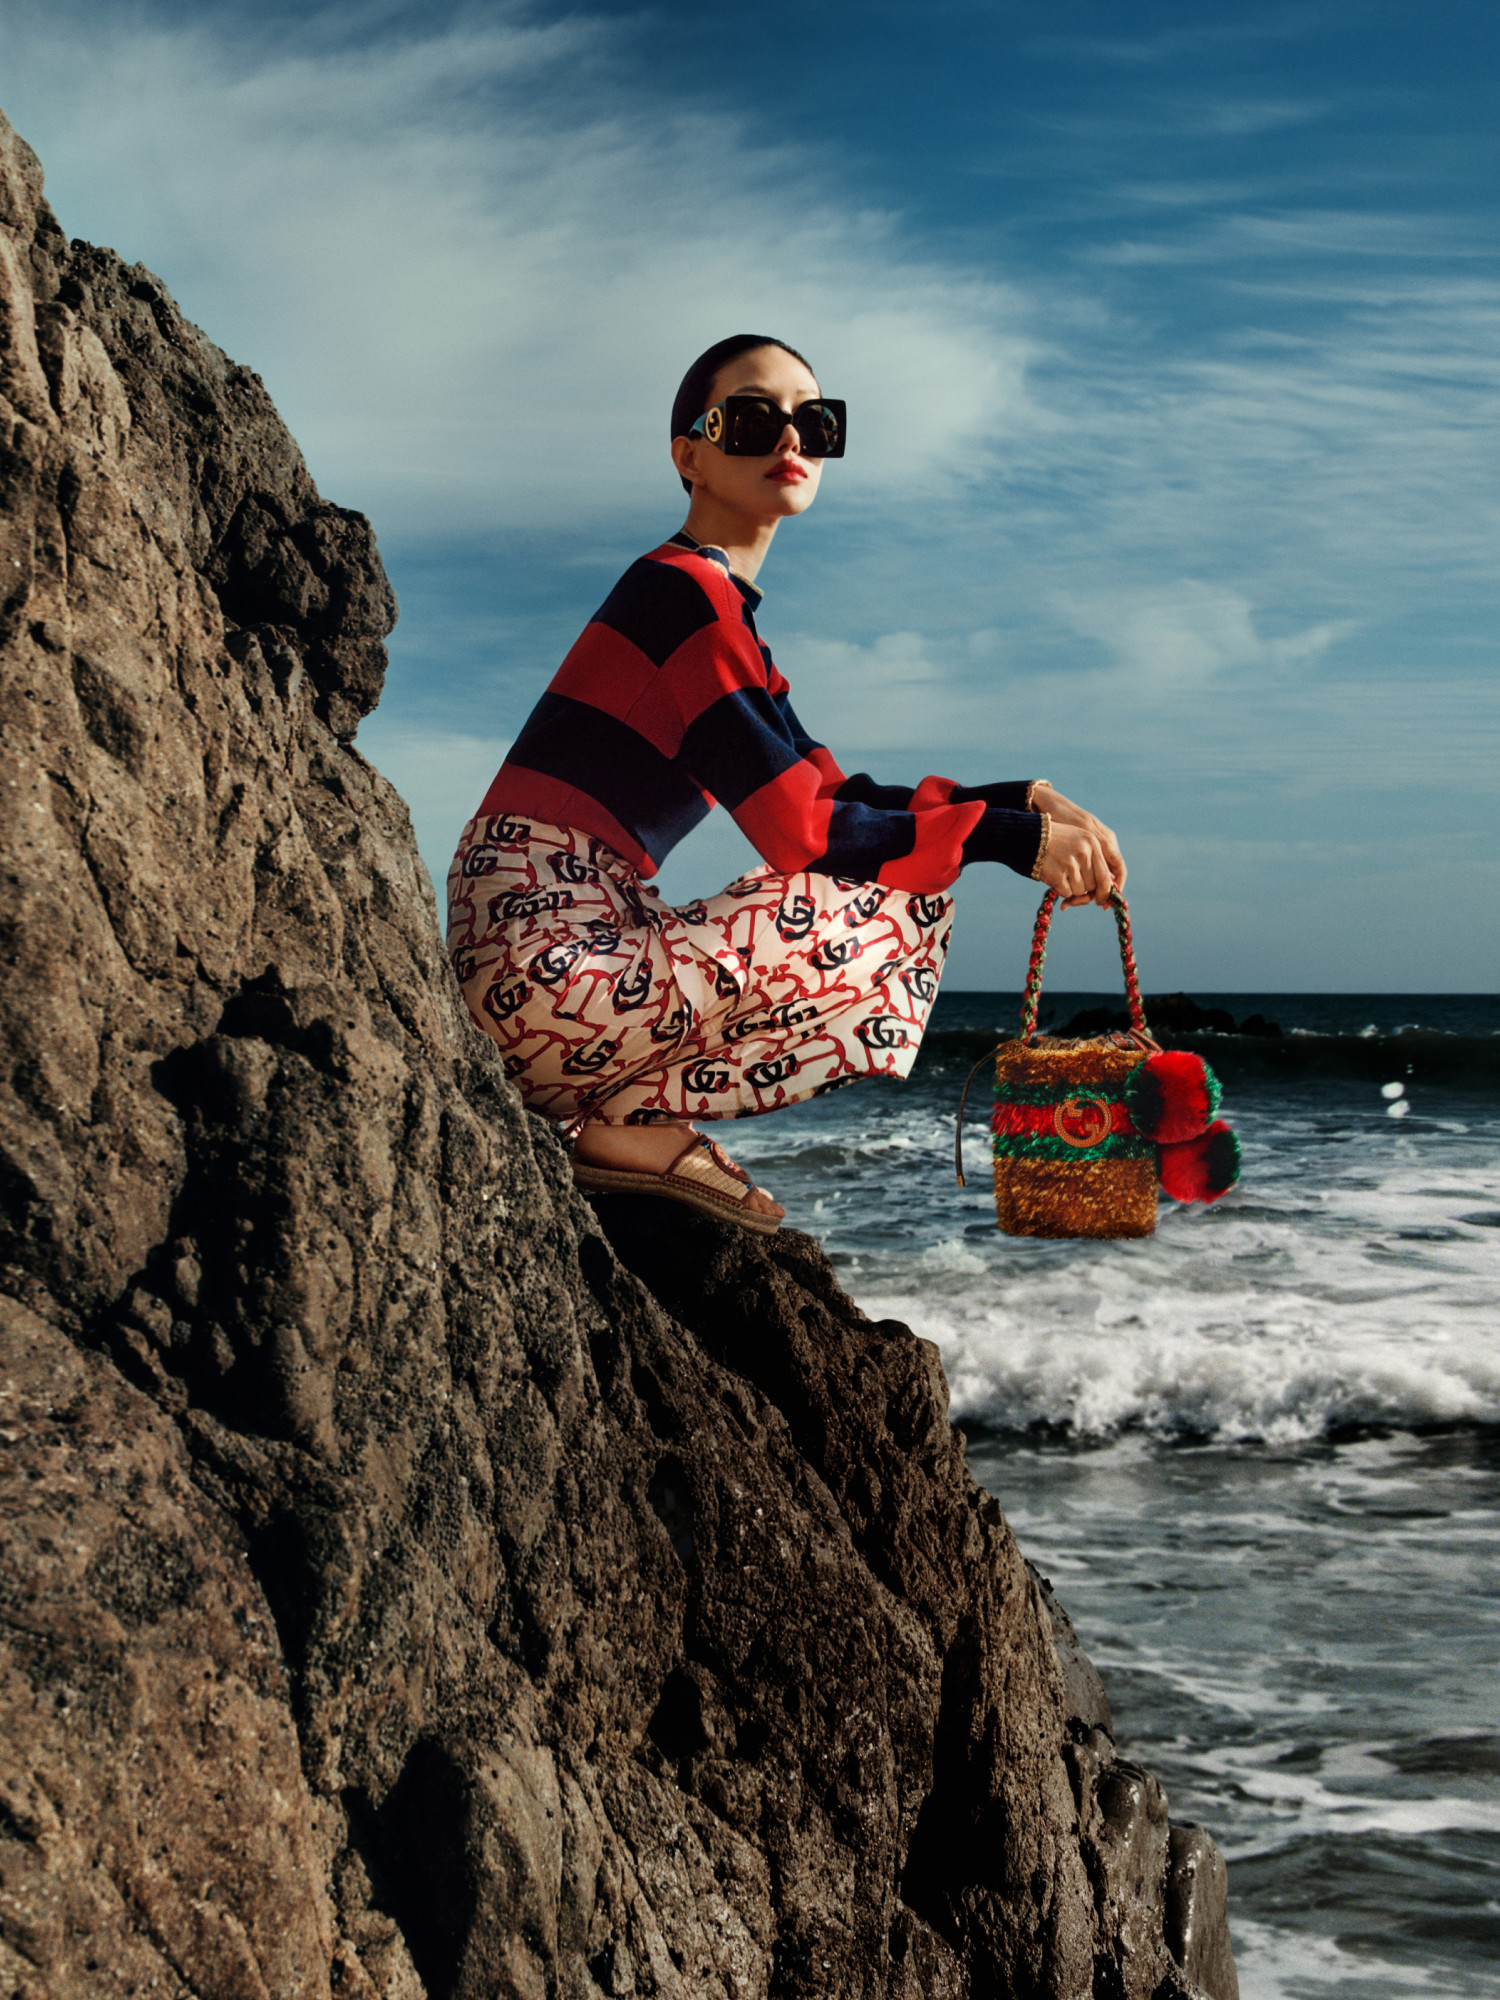 模特穿着条纹毛衣和船锚印花半身裙，站在海边的悬崖上，手拿饰有互扣式双G标识、条纹和绒球的迷你手袋。
